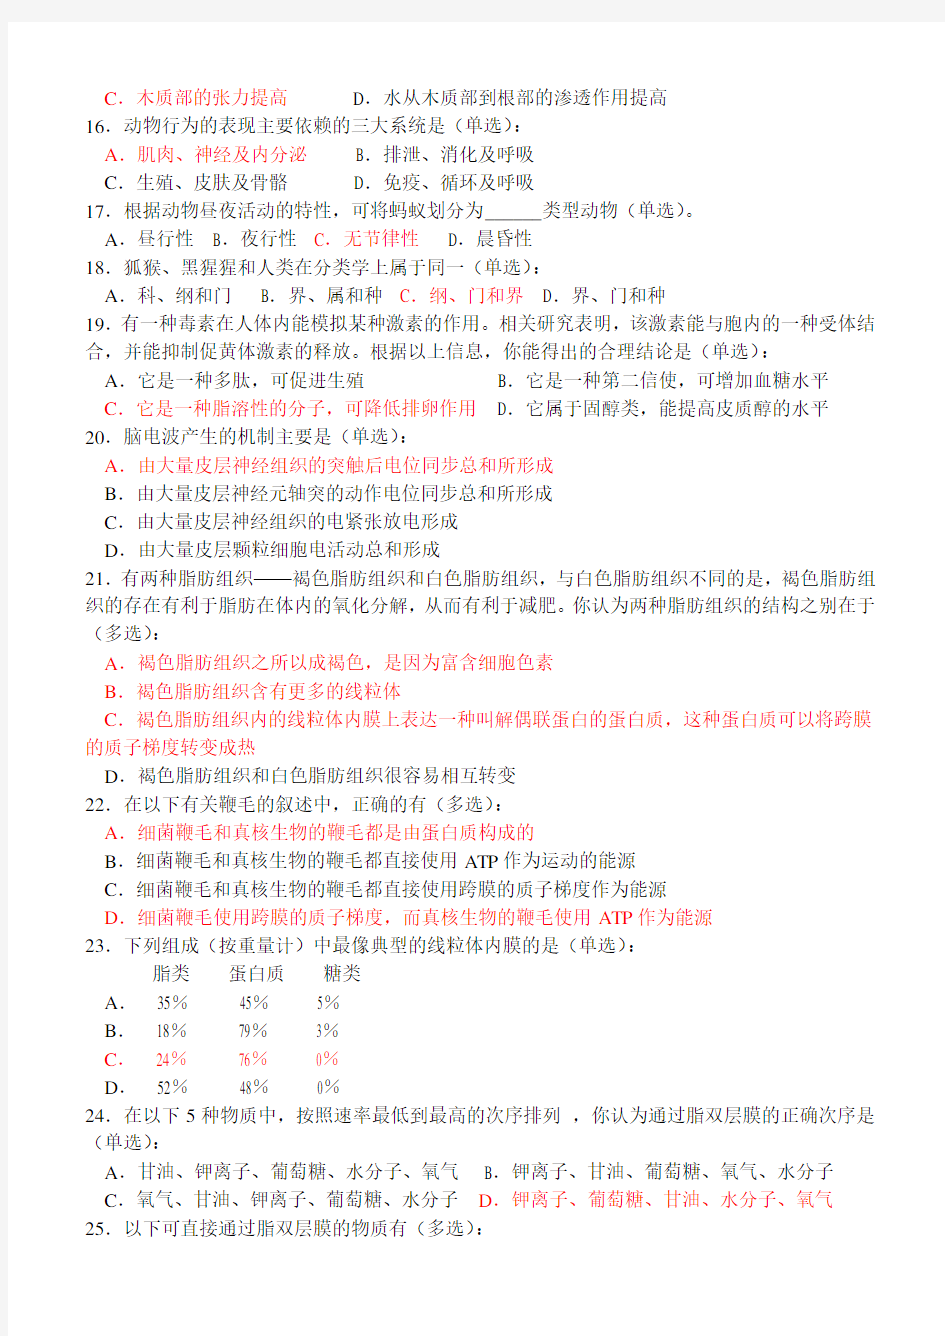 2013年江苏省中学生生物学竞赛(奥赛)初赛试题和答案